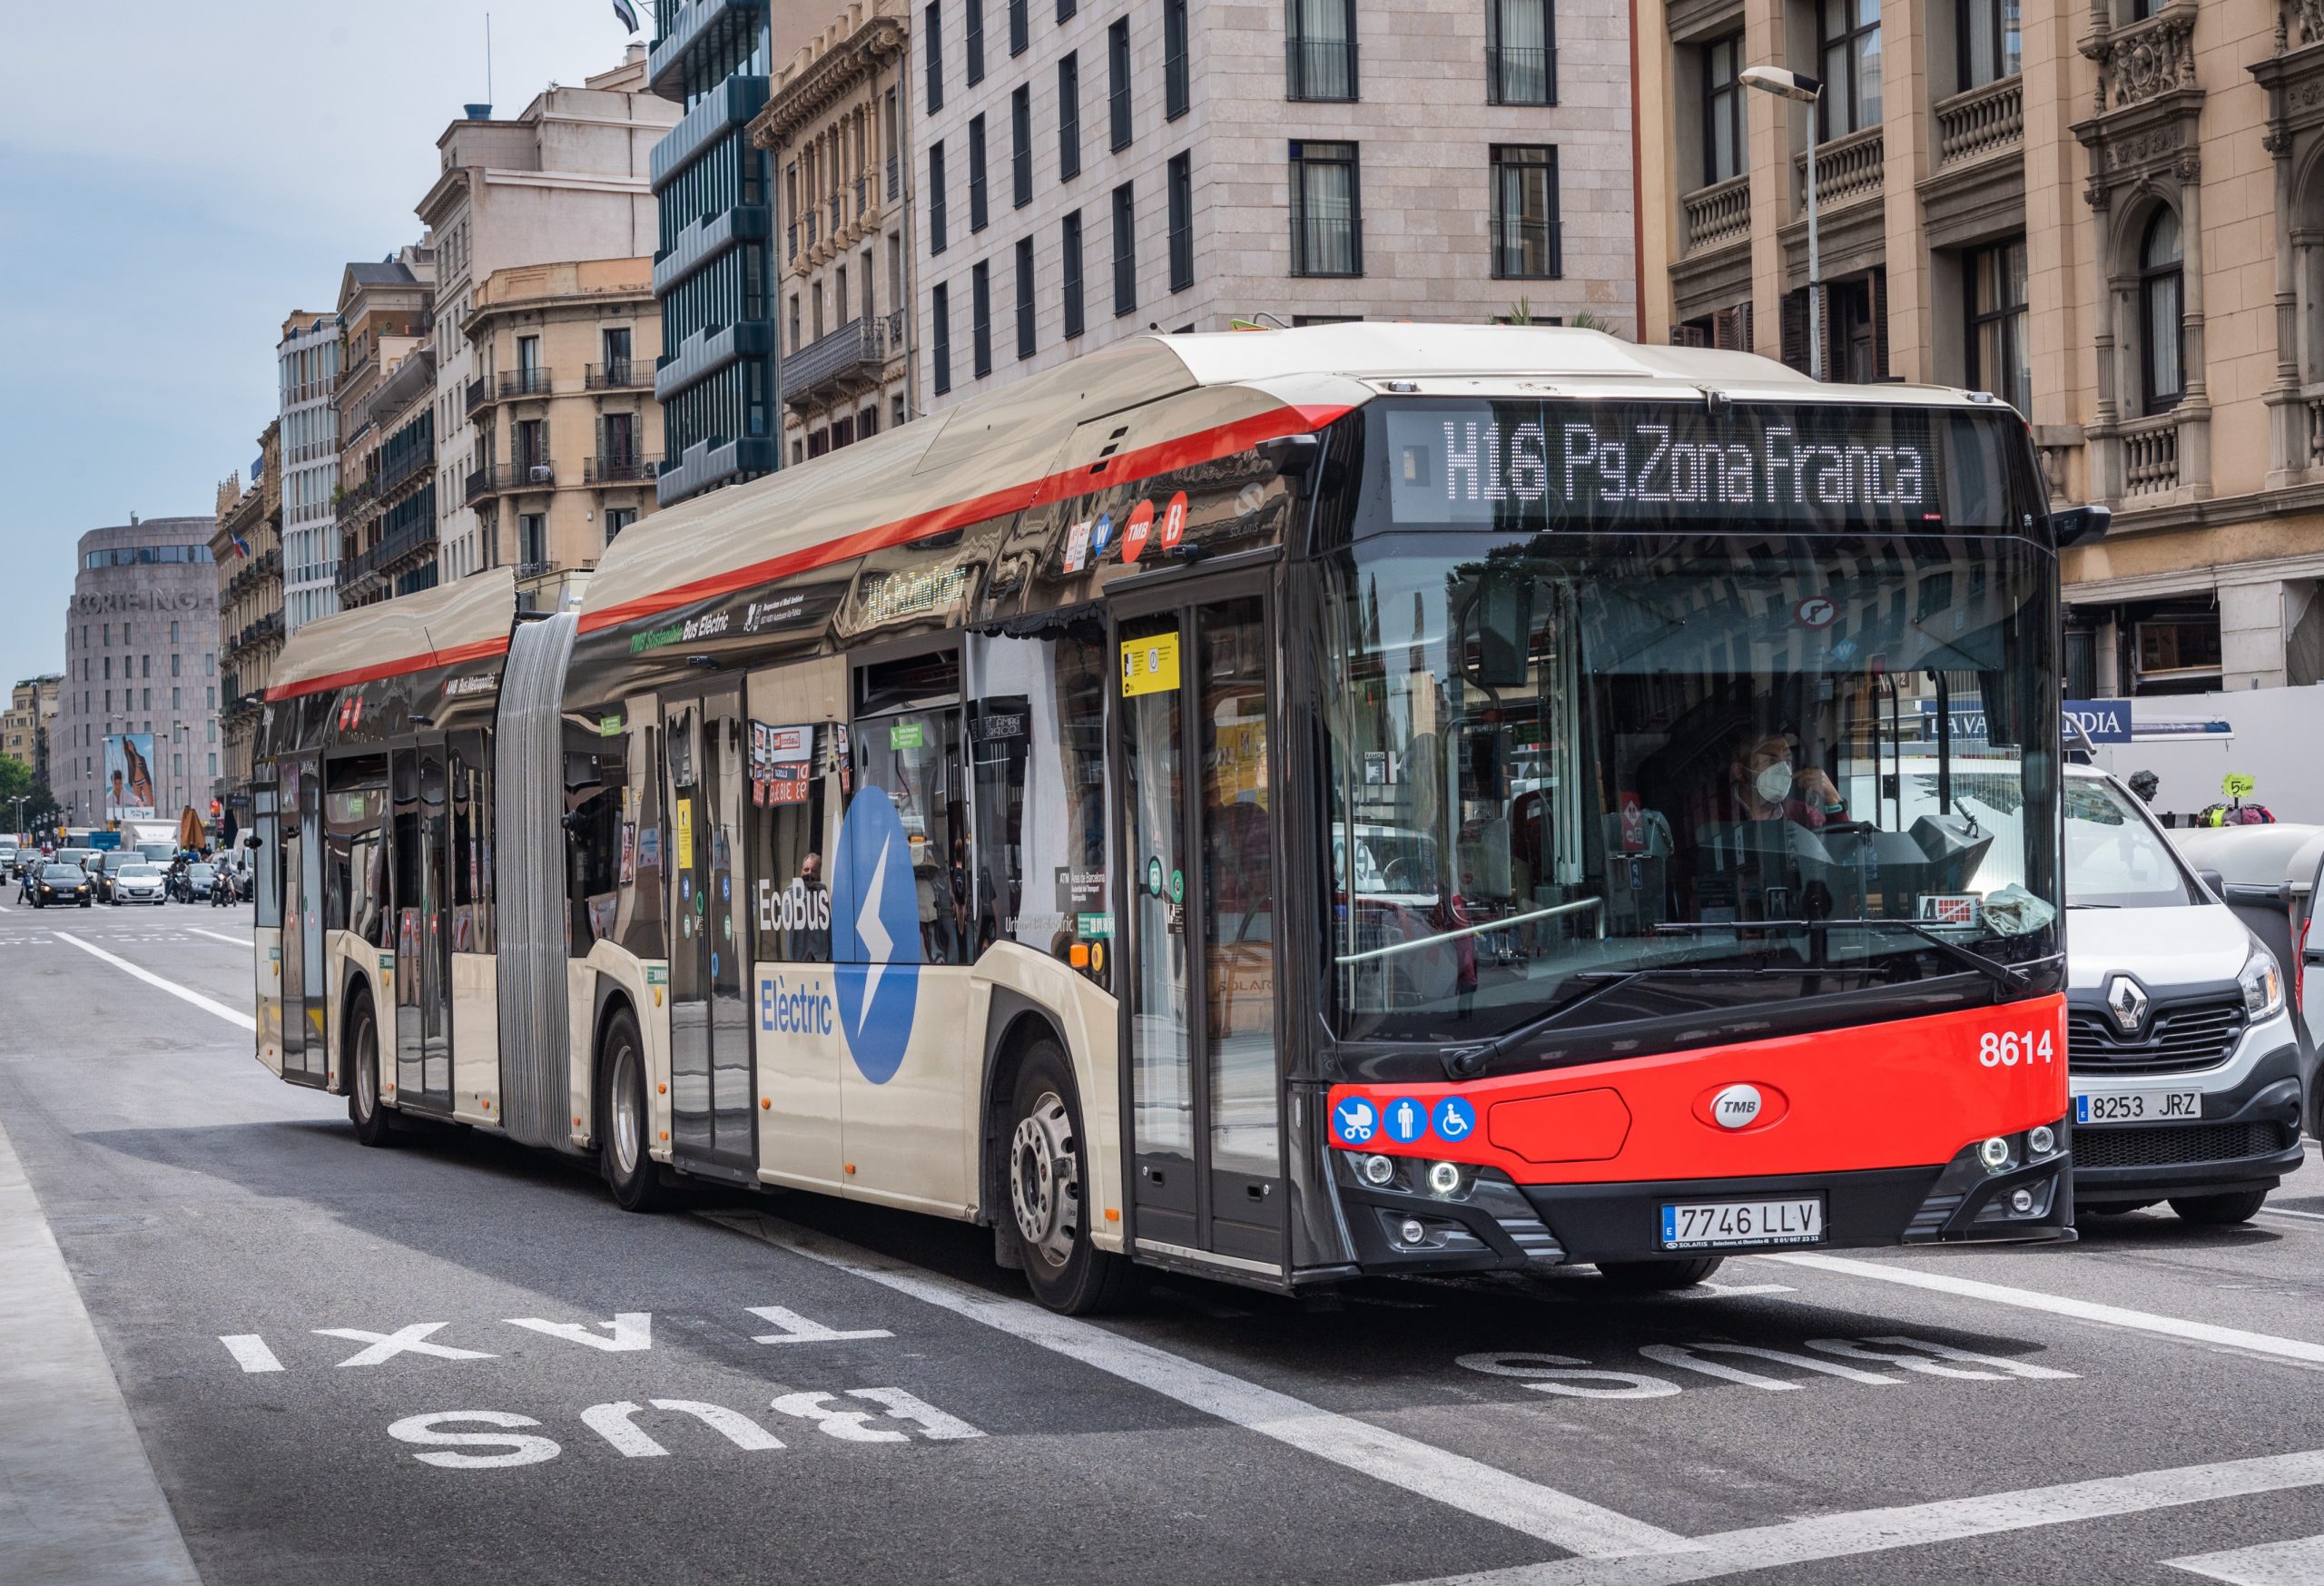 Öt gyártó szállítja a TMB Barcelona legújabb környezetbarát autóbuszait